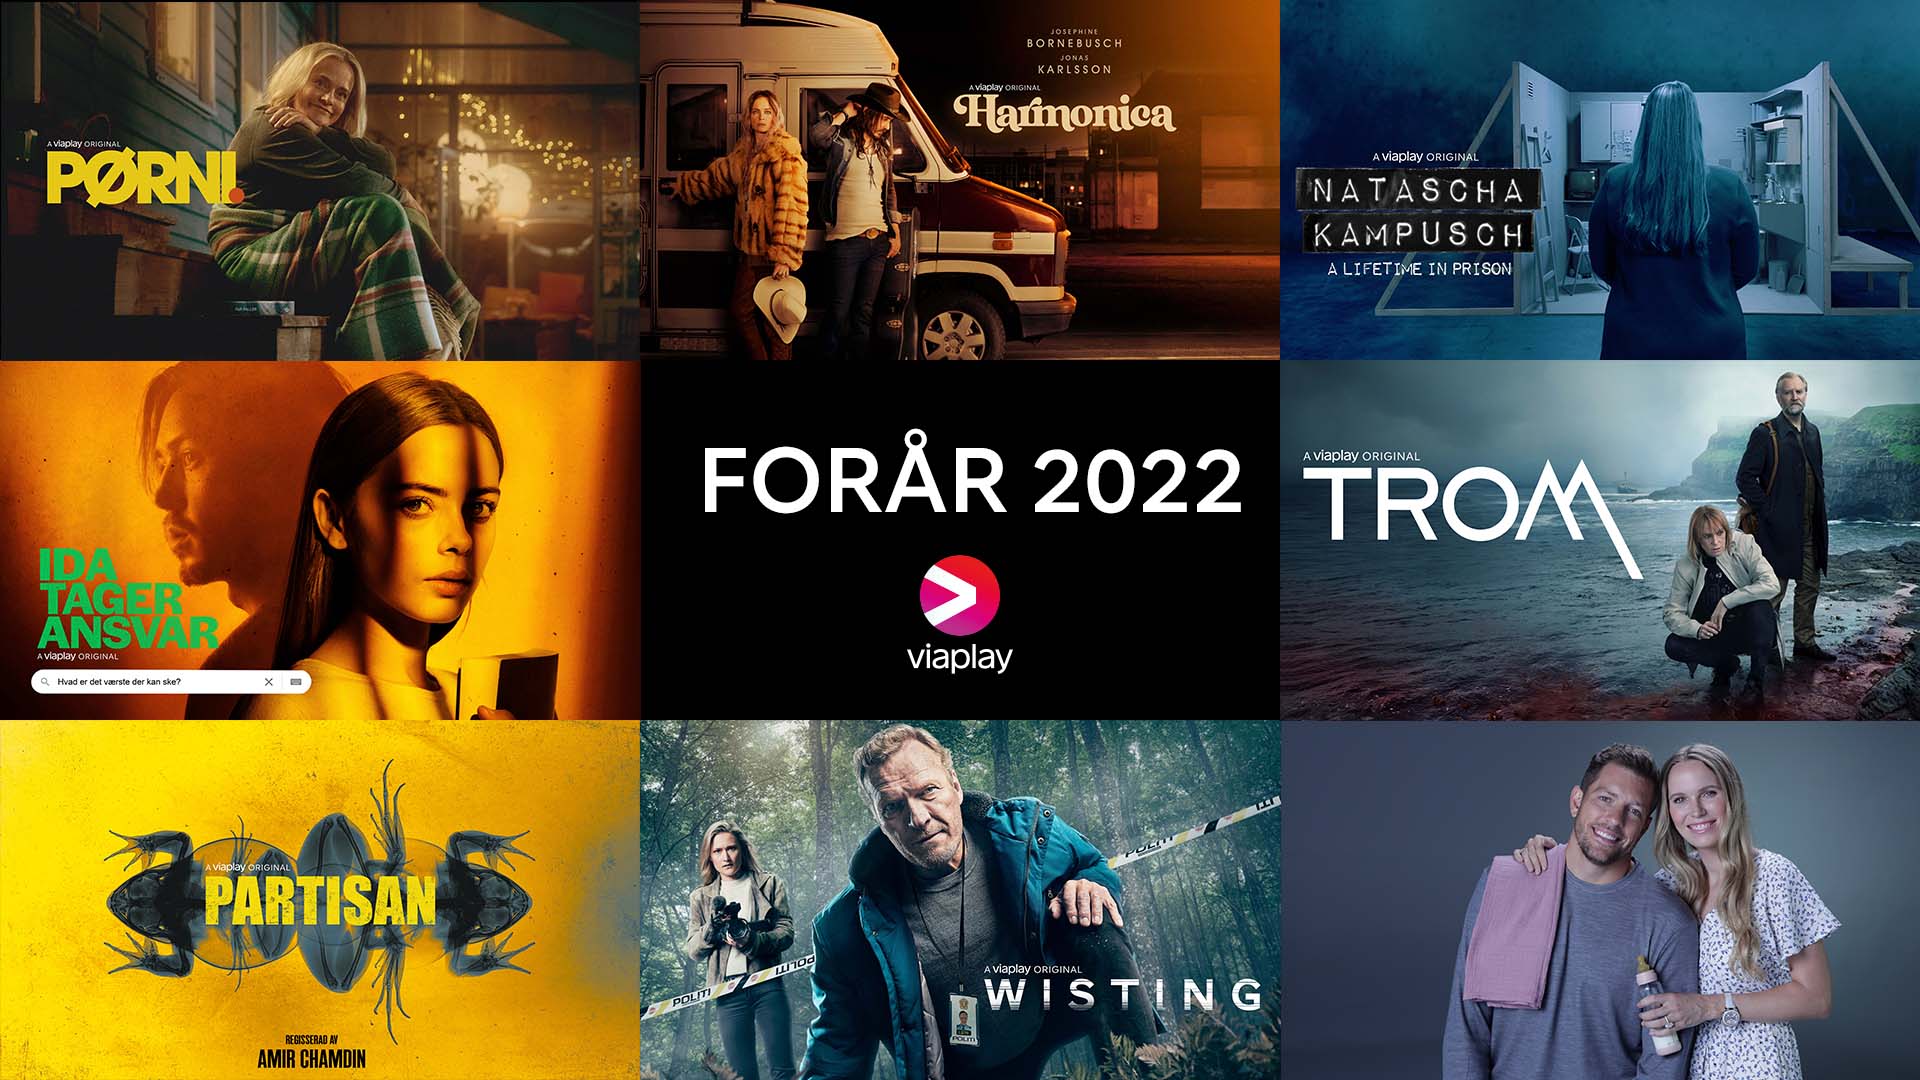 Viaplay Group er én af Nordens førende underholdningsleverandører. I Danmark står vi bag streamingtjenesten Viaplay samt en TV-kanaler, herunder TV3, TV3+, TV3 Puls, TV3 MAX og sportskanalen TV3 Sport.